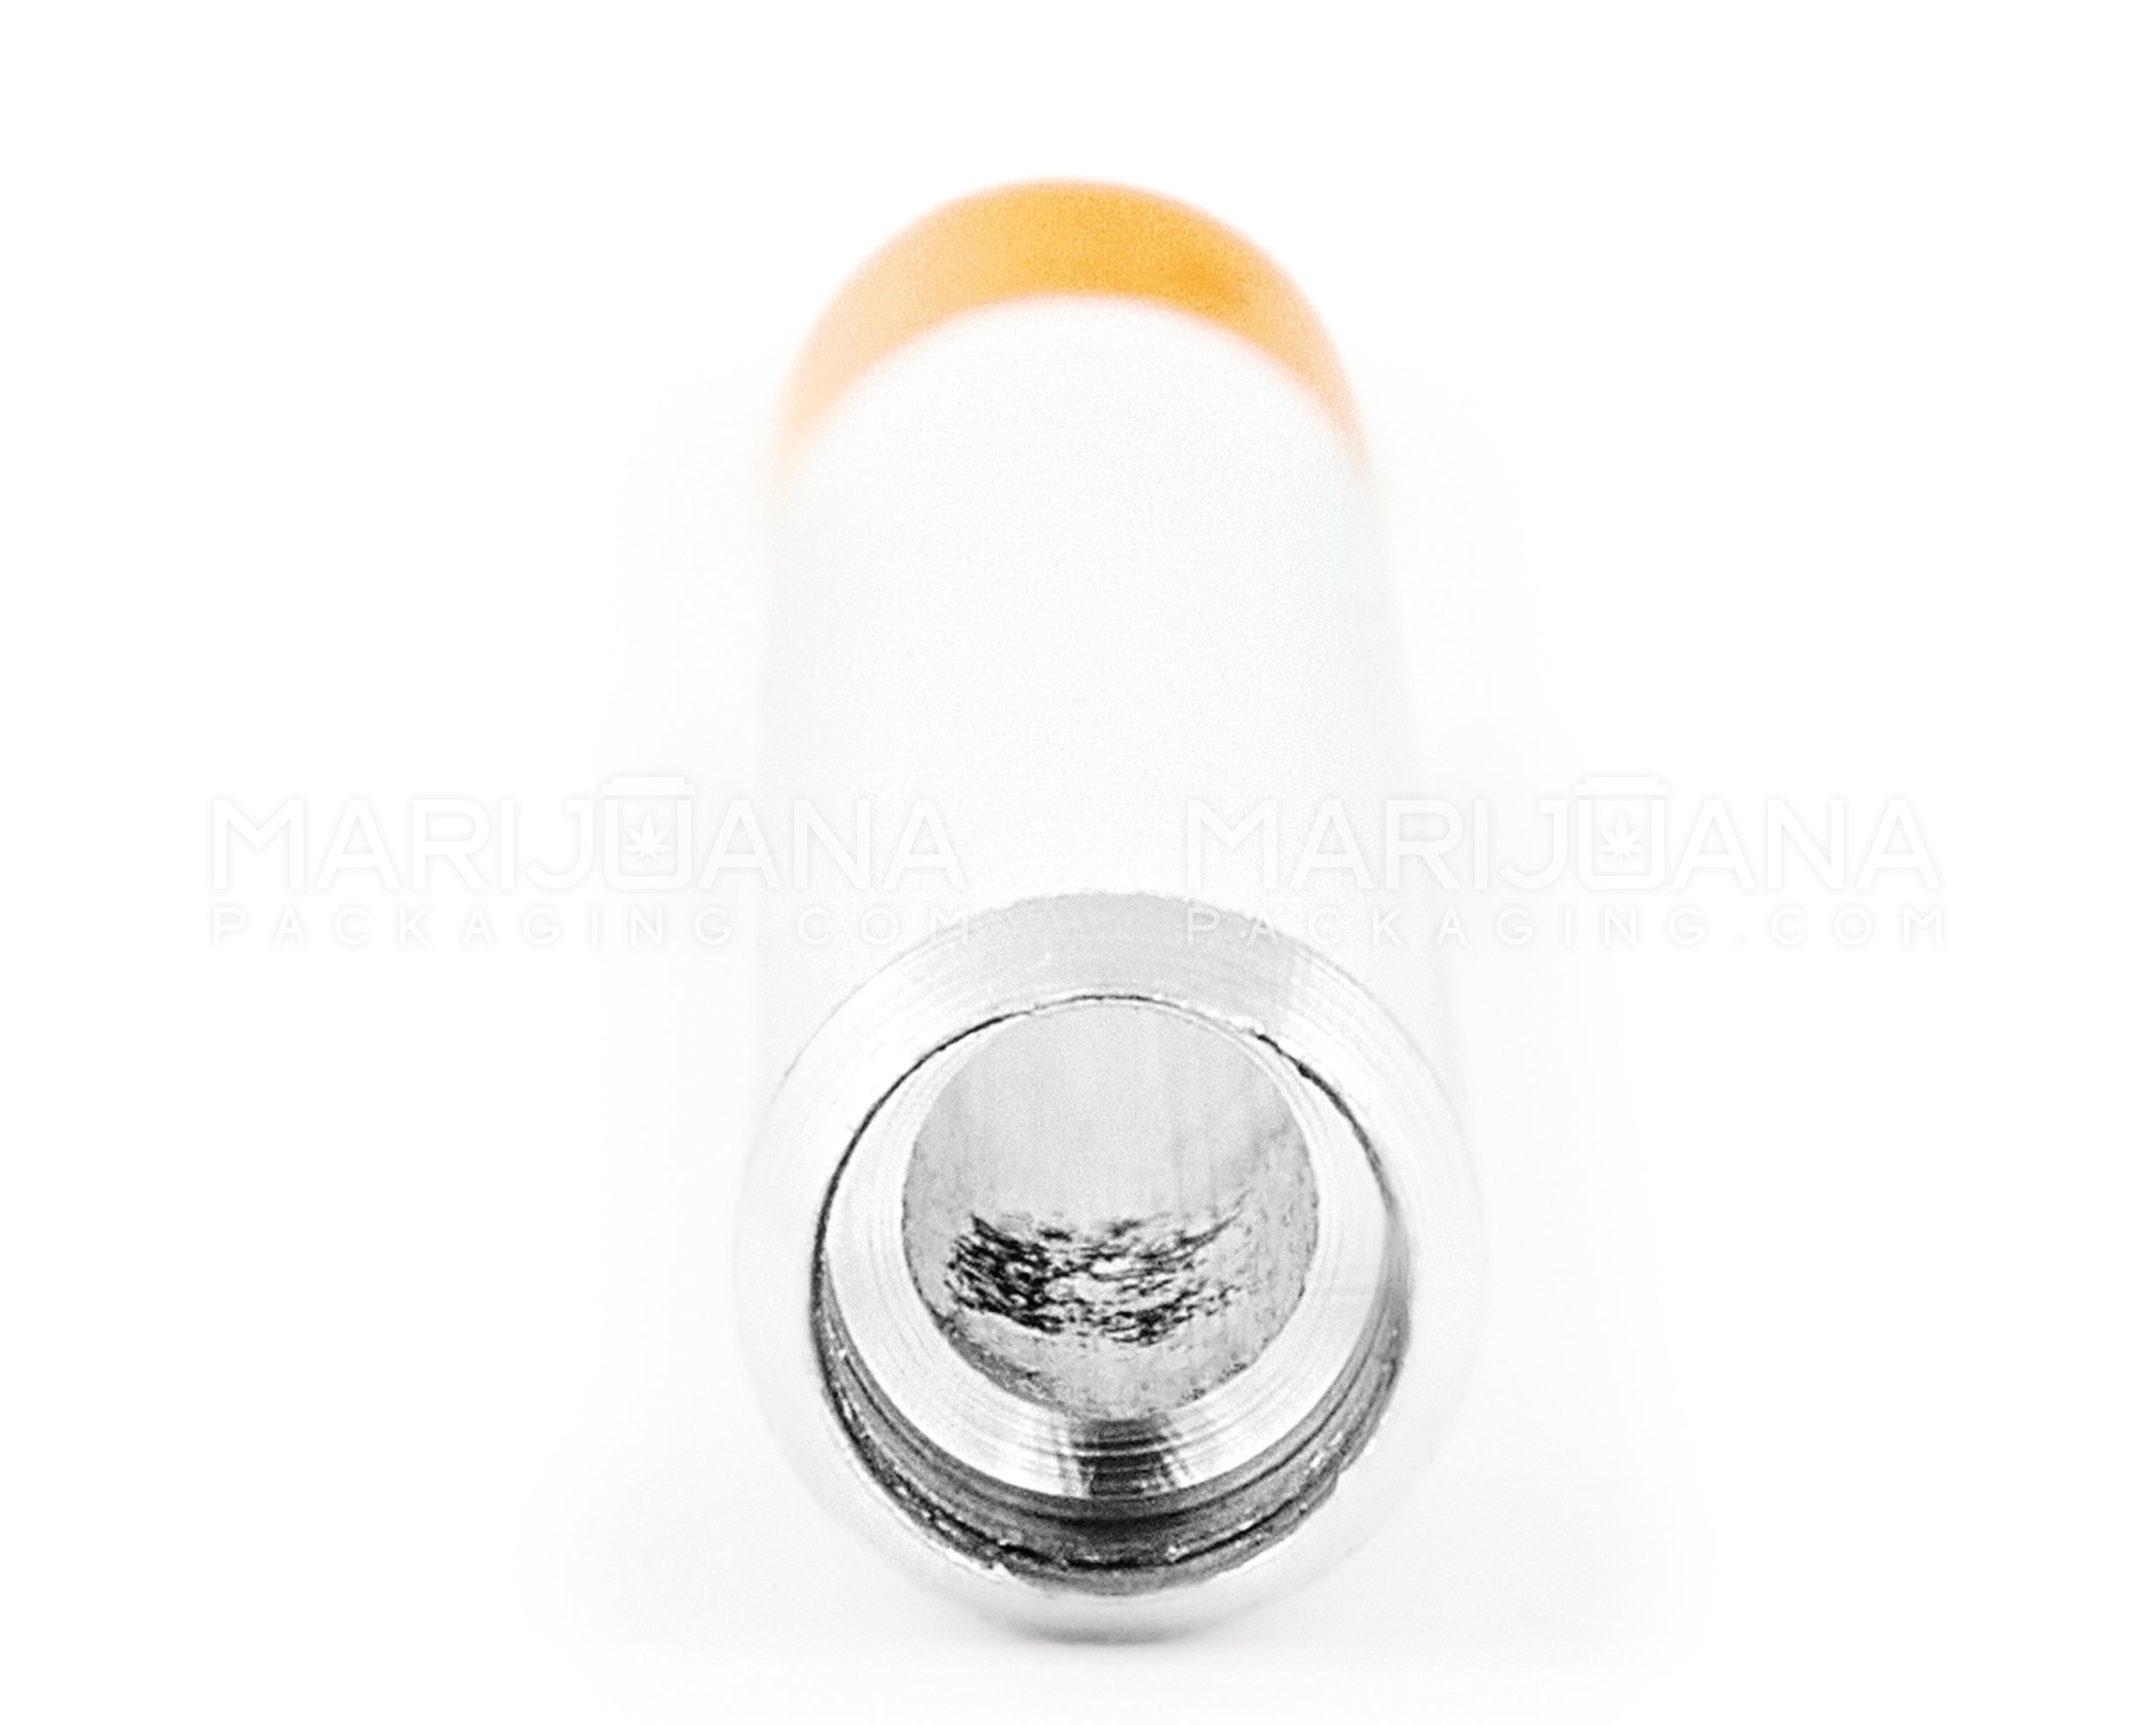 Cigarette Chillum Hand Pipe | 3in Long - Metal - Orange & White - 3